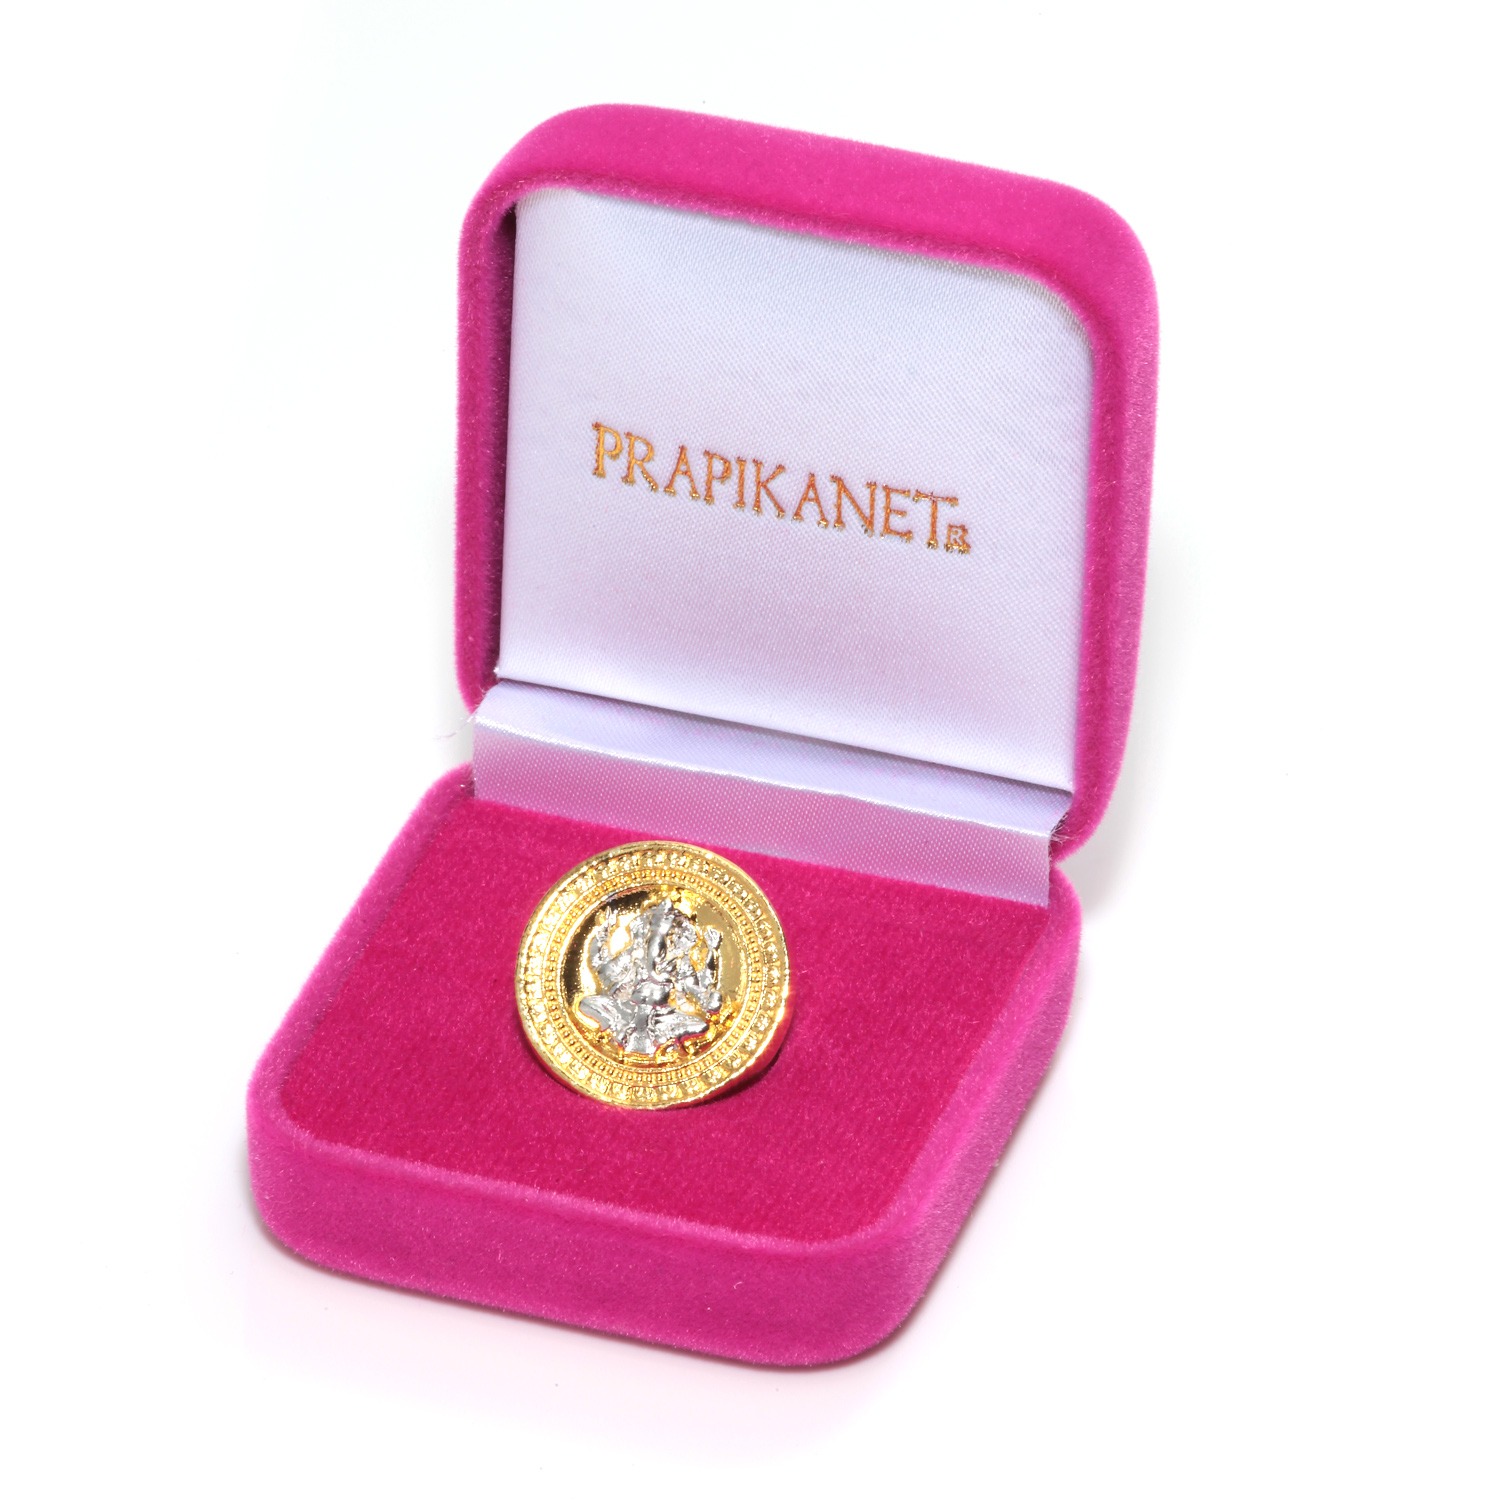 プラピカネ コイン 巨万の富と大幸運の神様 “金塊のお宝コイン 